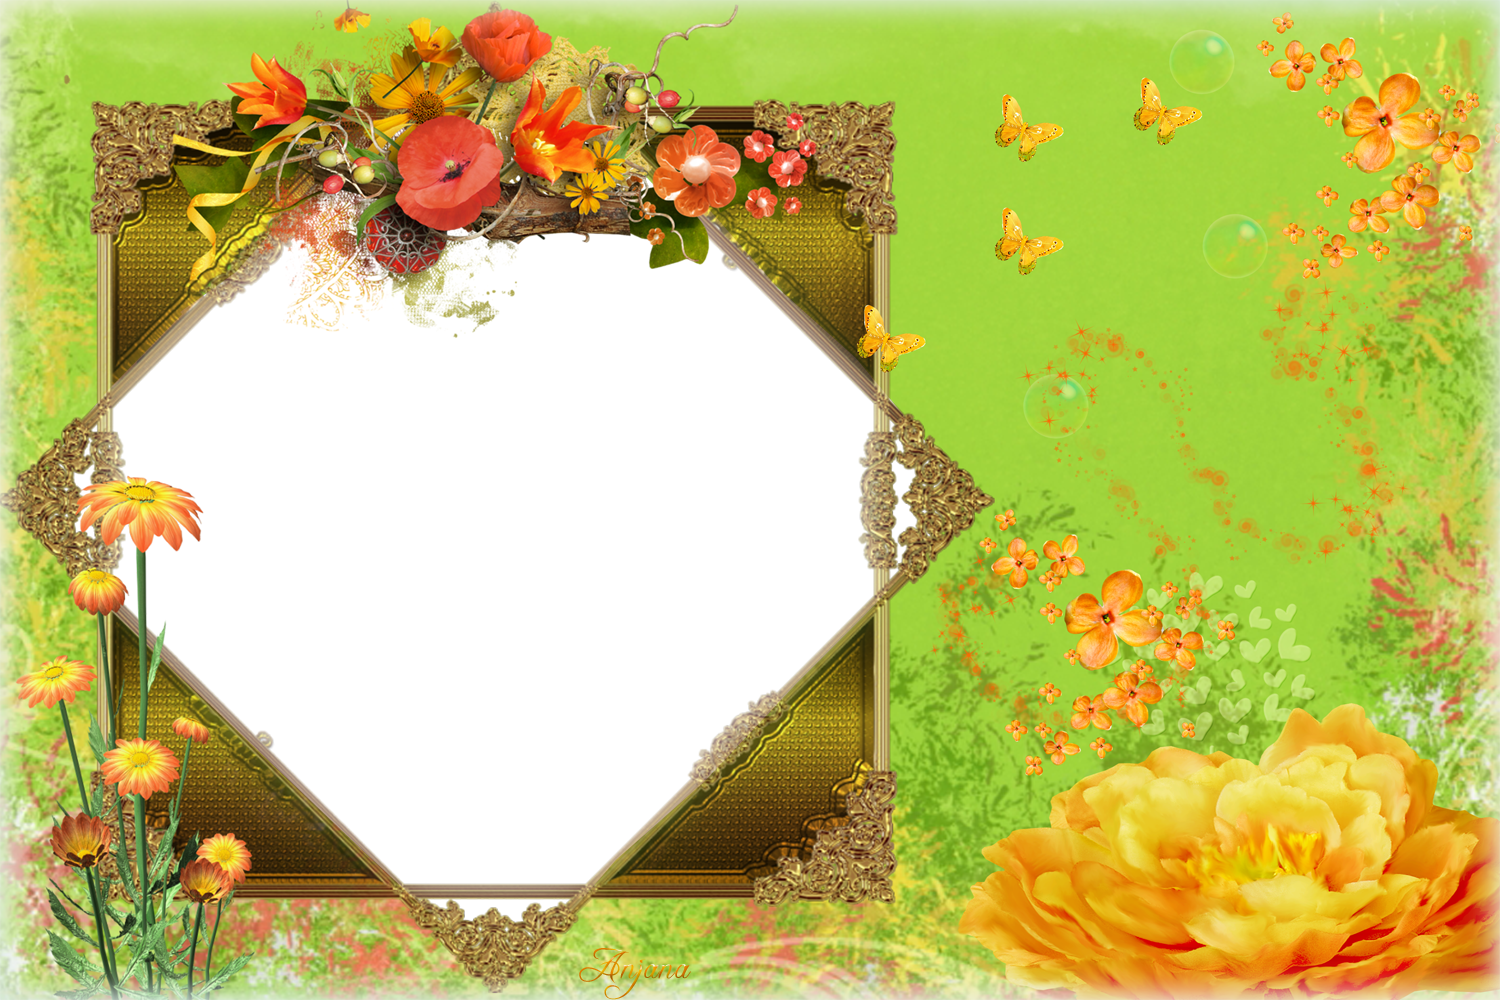 png wallpaper download,picture frame,heart,flower,plant,floral design